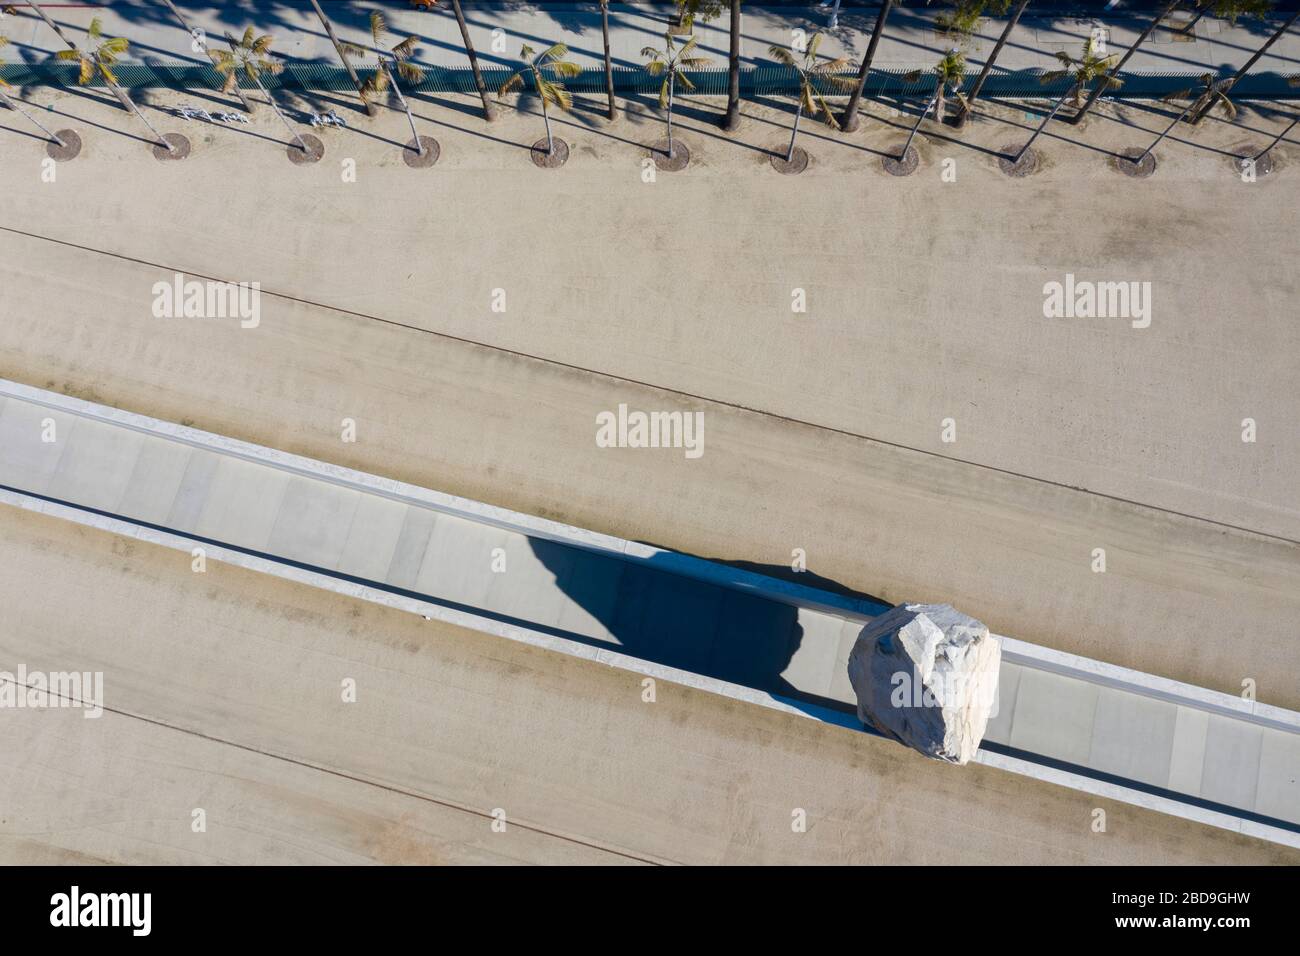 Veduta aerea della Messa Levitata dell'artista Michael Heizer al museo LACMA di Los Angeles Foto Stock